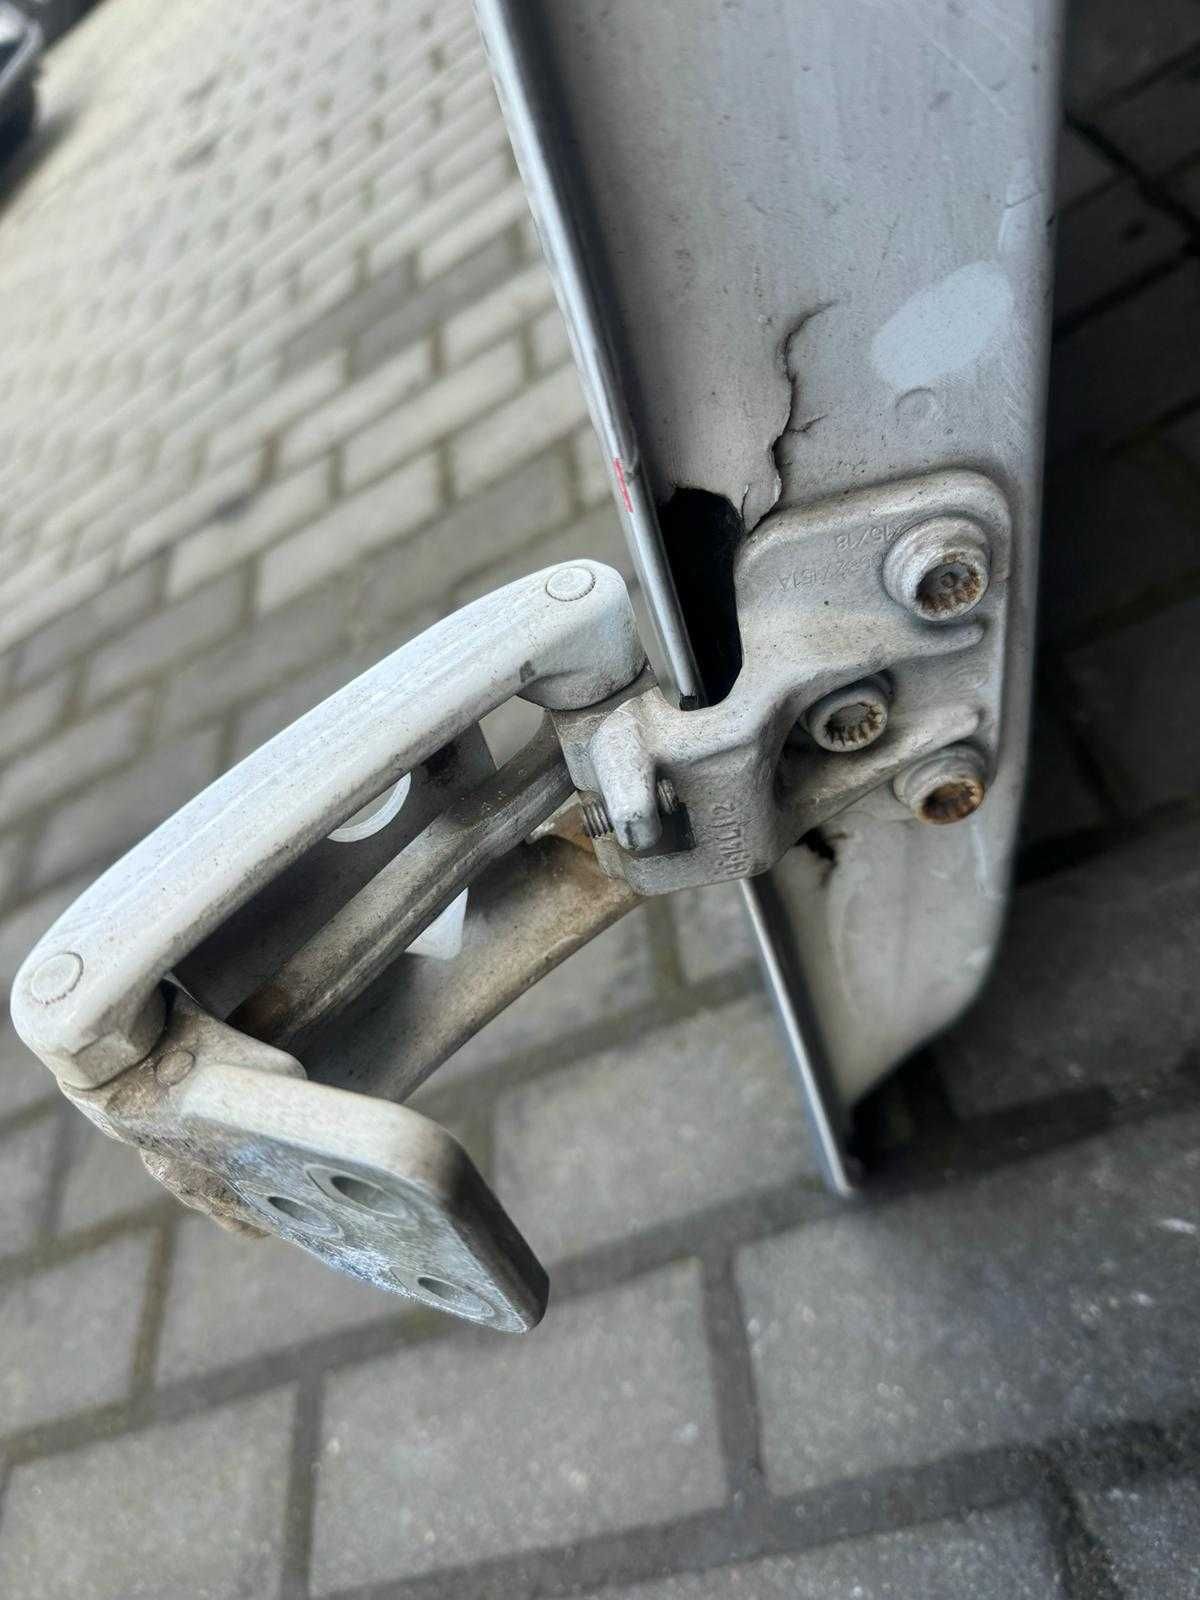 Drzwi Volkswagen Crafter przednie europa kompletne